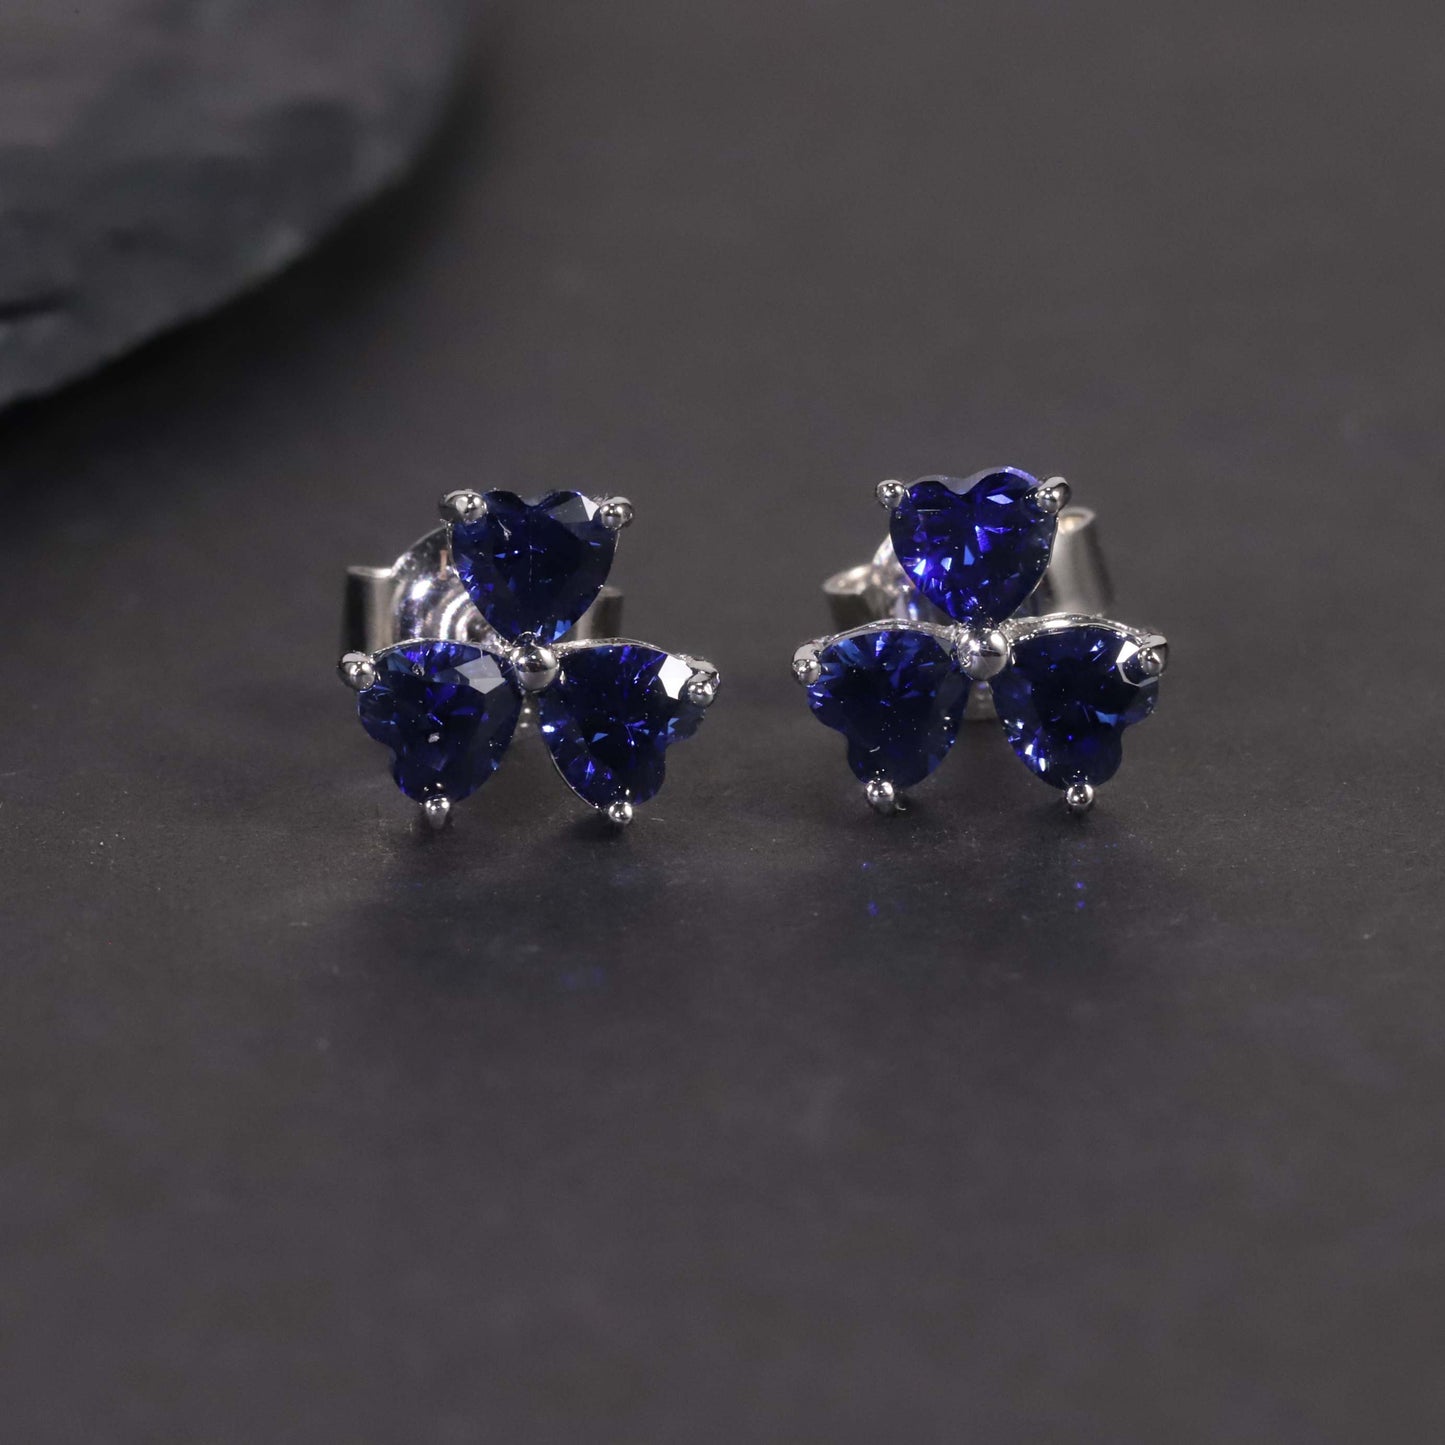 Flower Shape Stud Earrings in Sterling Silver -  Sapphire